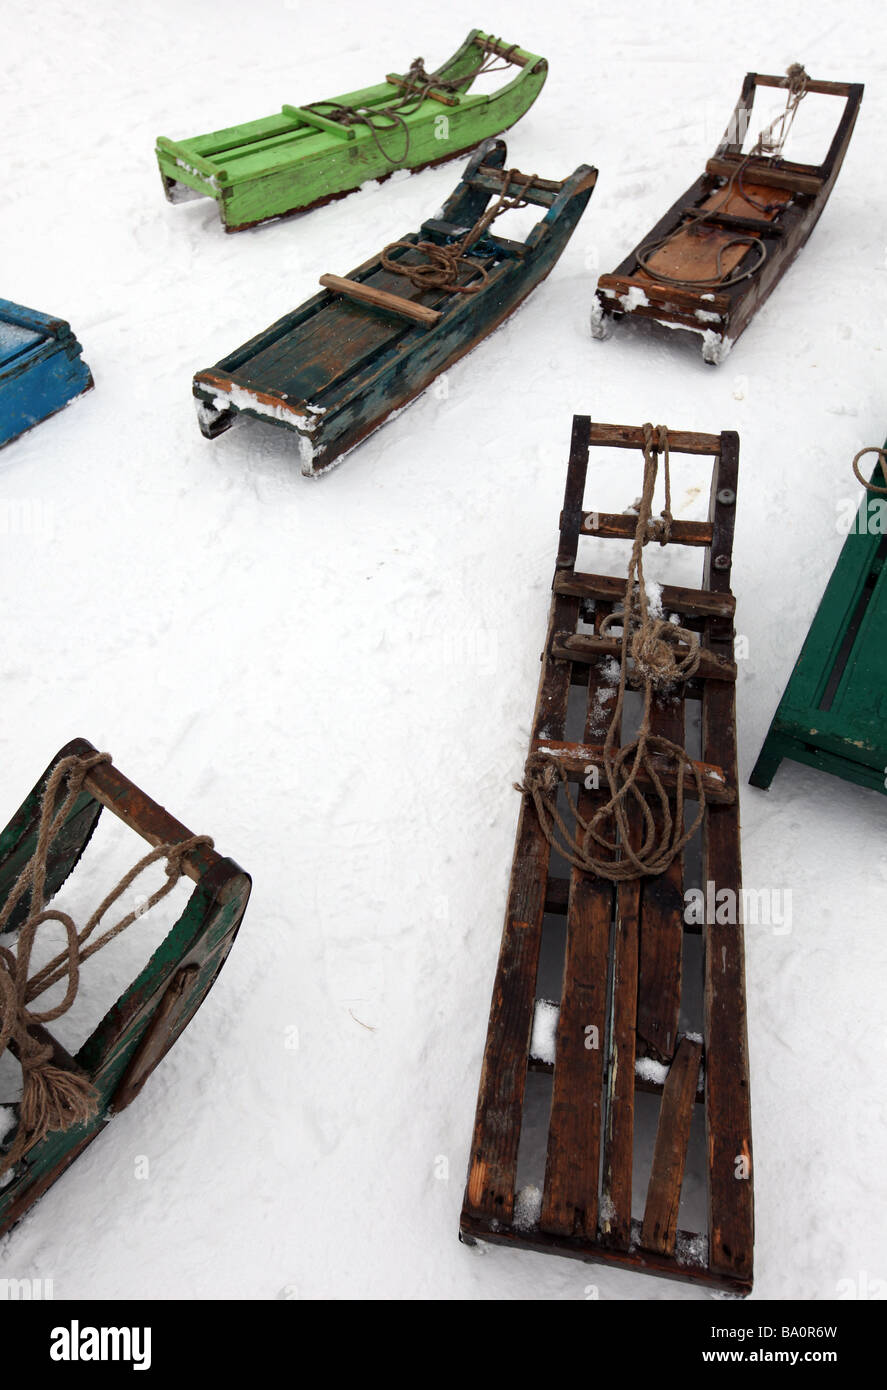 Trineos que wallahs utilizar para transportar a los visitantes alrededor de la estación de esquí de Cachemira, la India Gulmarg yacen en la nieve esperando a los clientes. Foto de stock